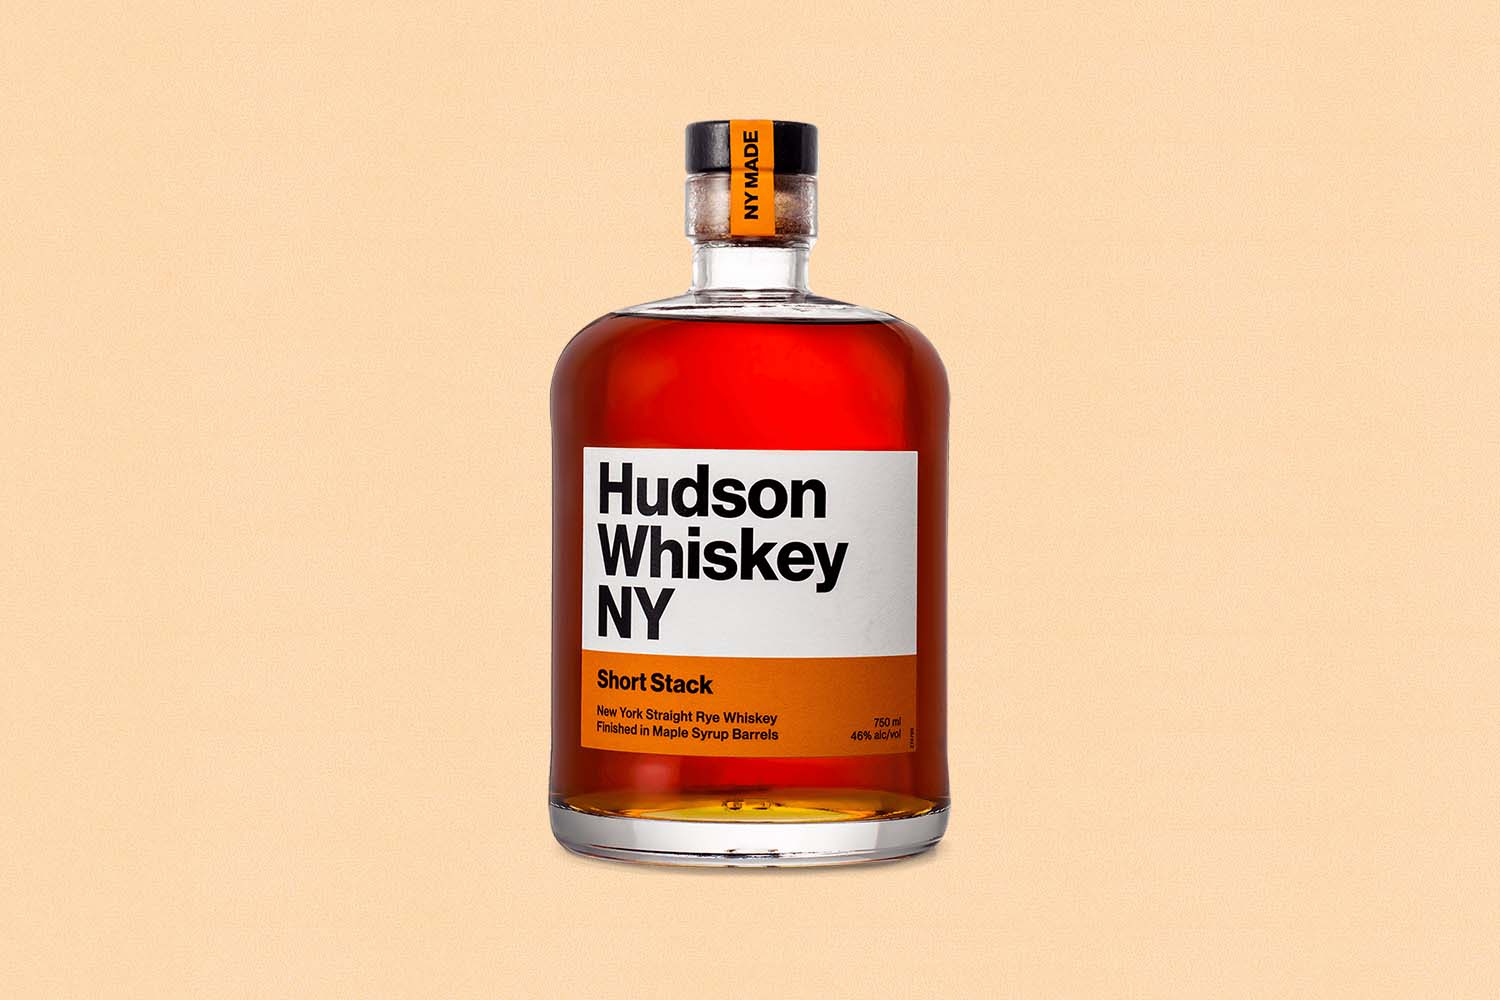 Hudson Whiskey Short Stack